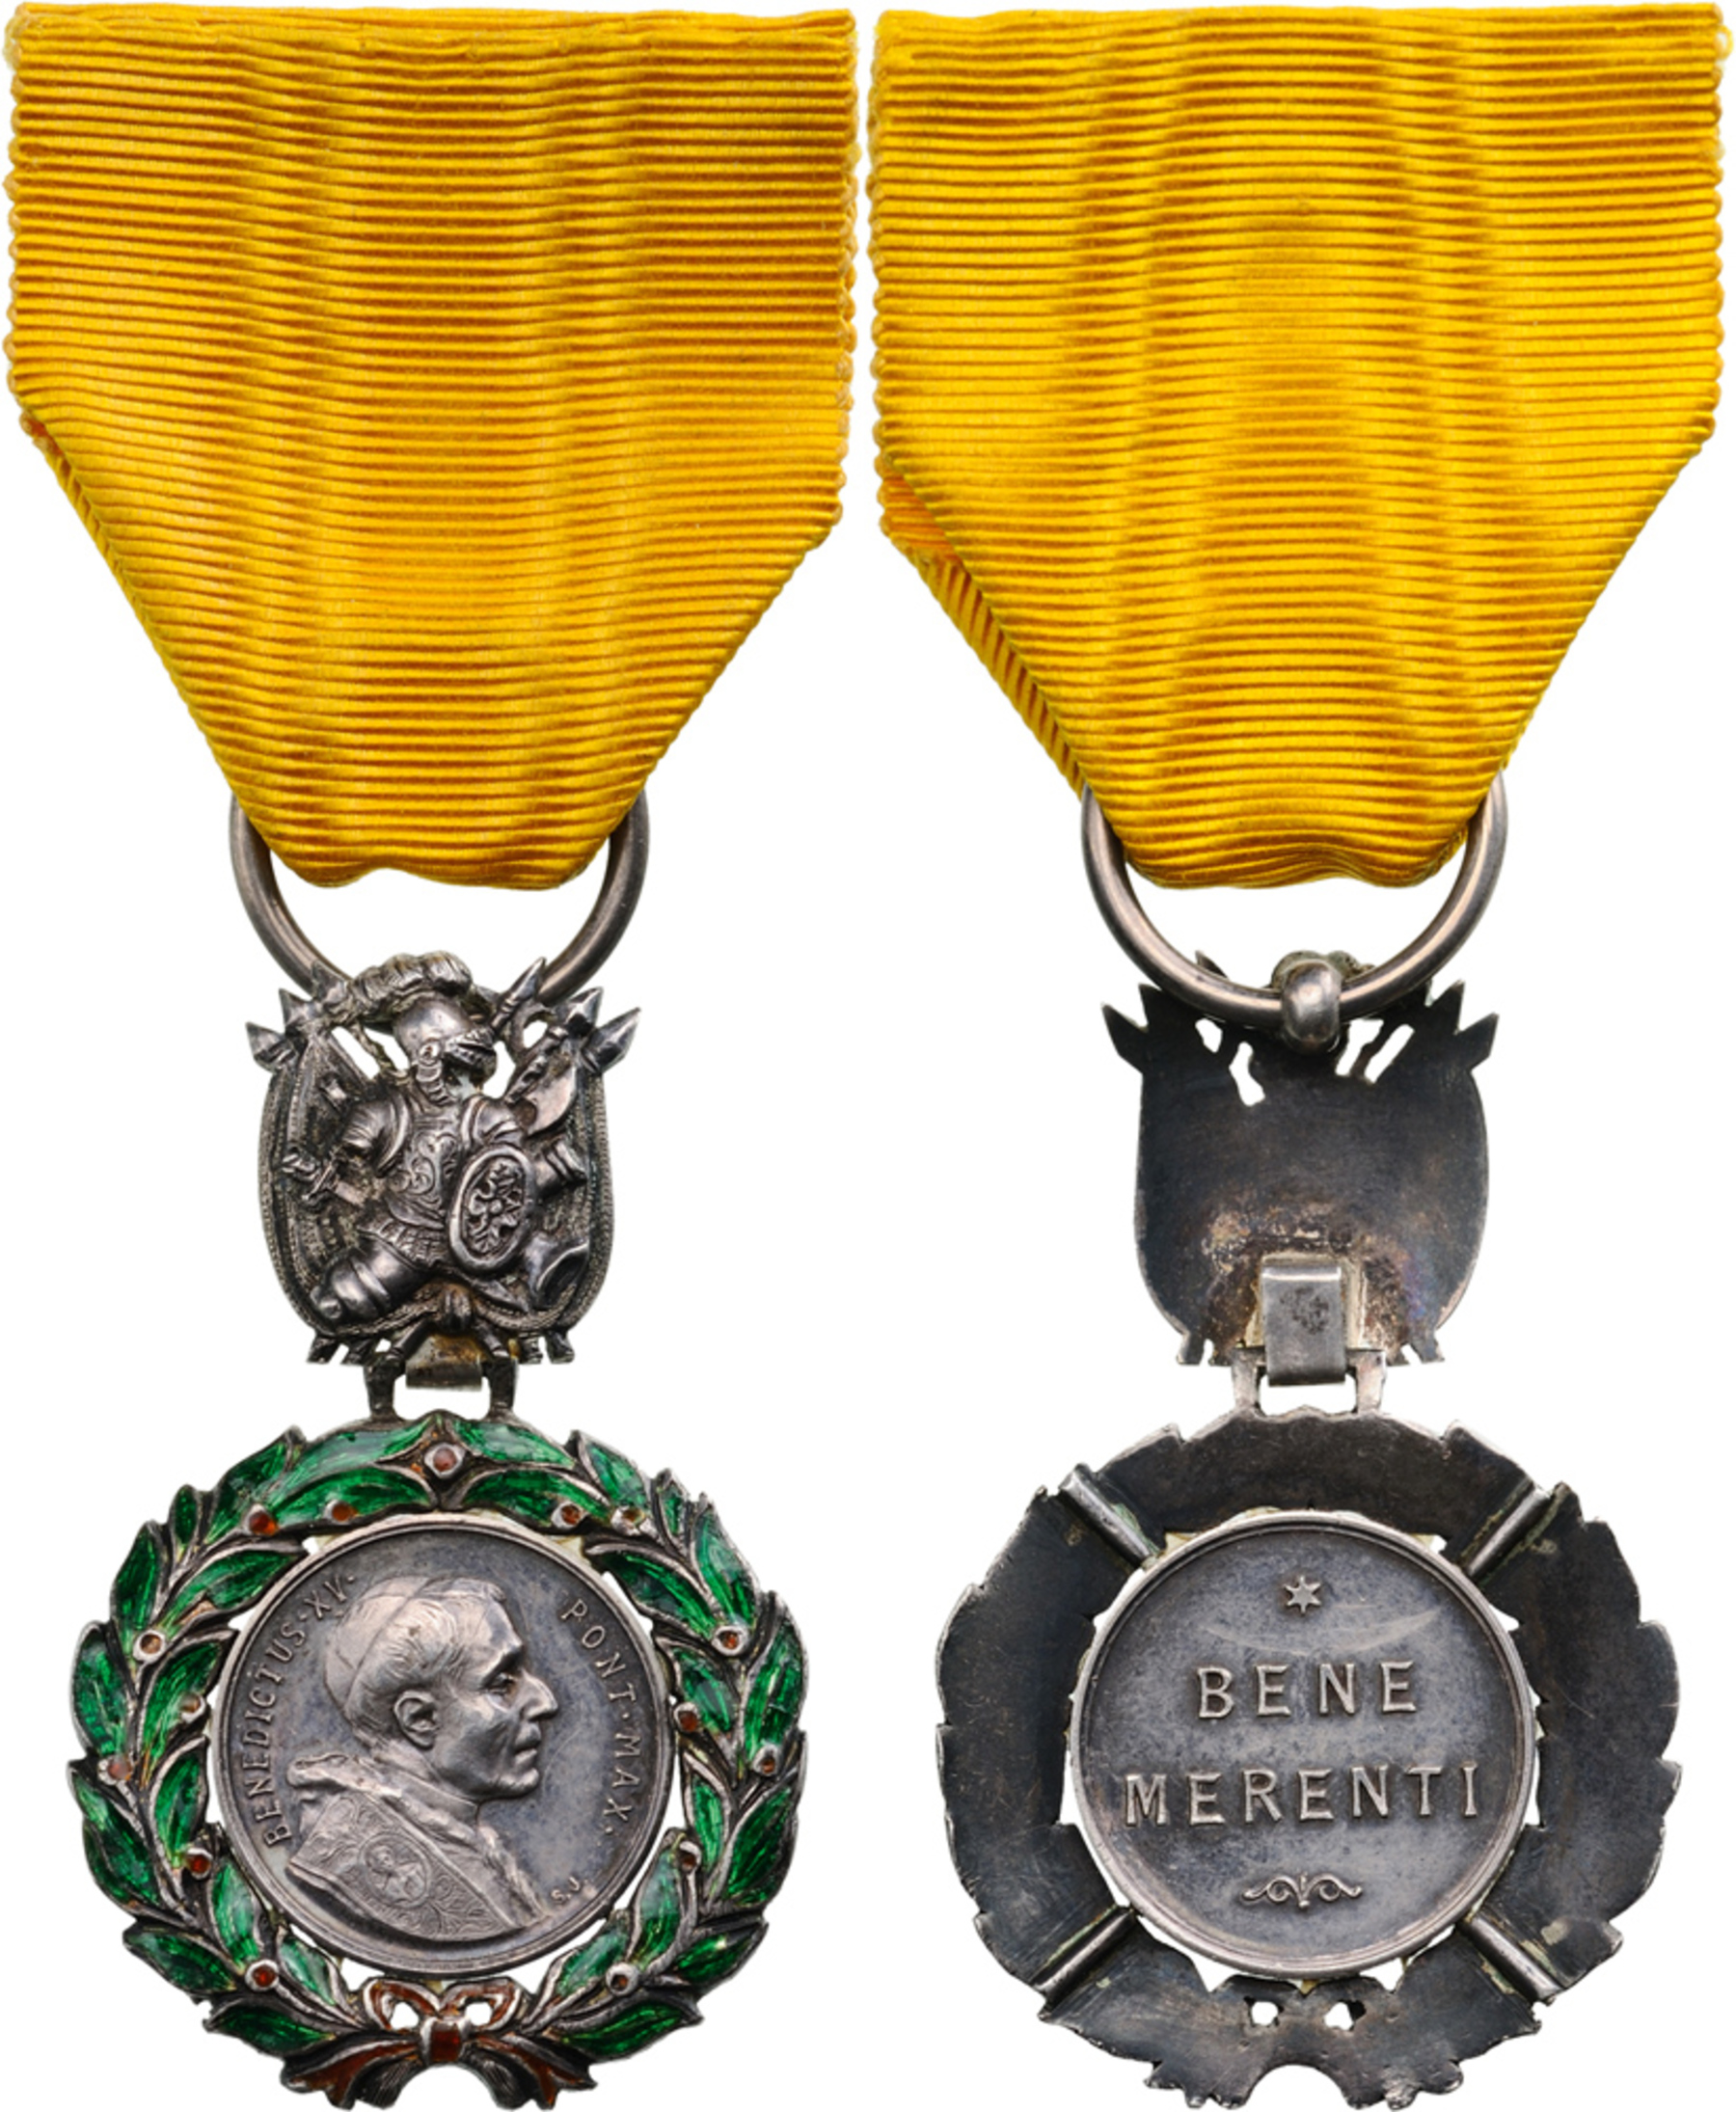 Silver Bene Merenti Medal for Military Merit